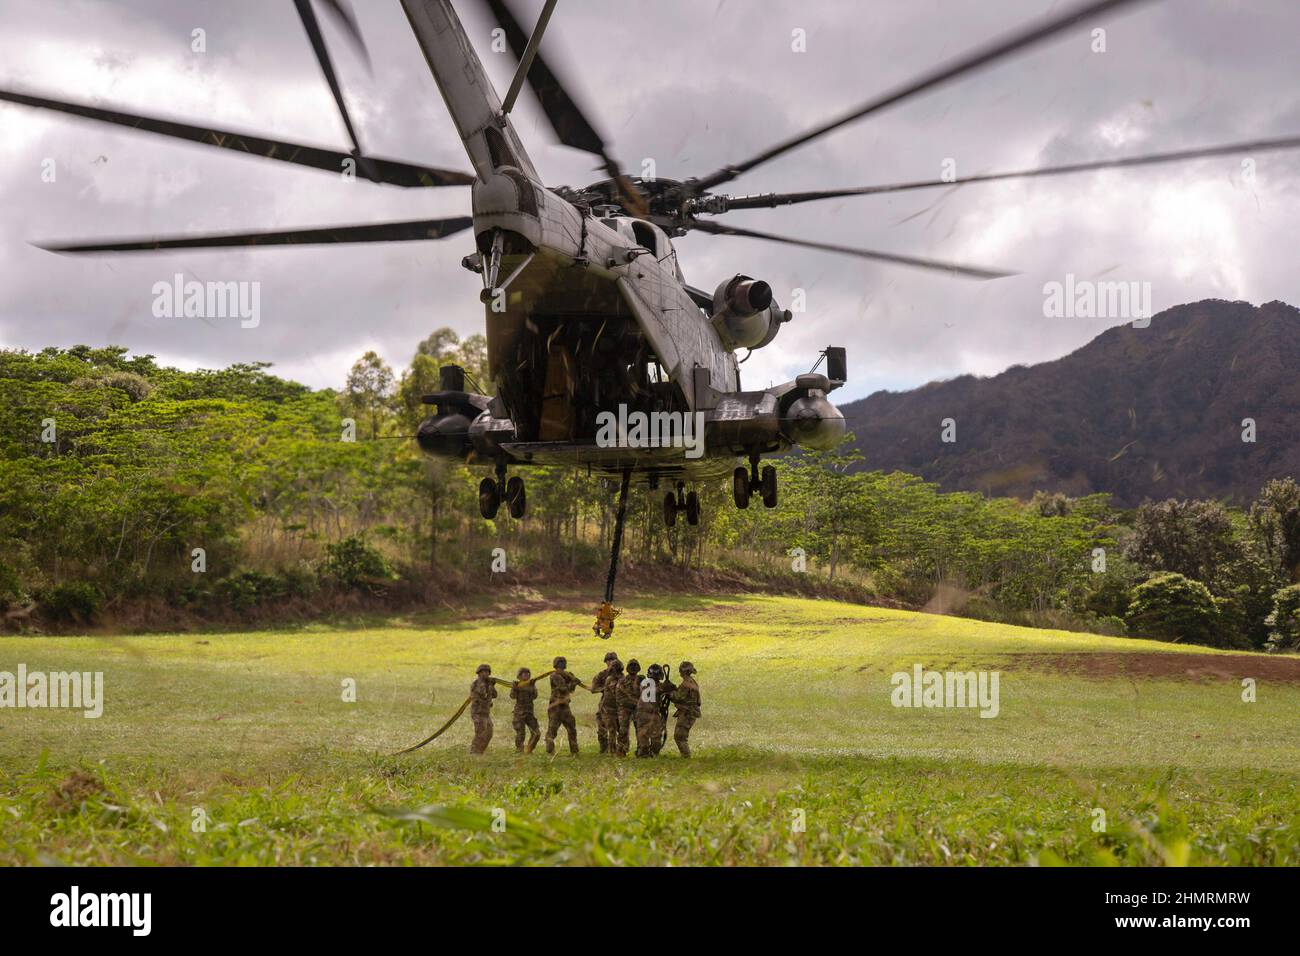 Hawaii, Estados Unidos. 27th de Ene de 2022. Un helicóptero Marine CH-53E Super Stallion asignado a Marine Heavy Helicopter Squadron (HMH) 463, realiza una carga de un helicóptero H-60 del Ejército de EE.UU. En el Cuartel Schofield, Hawai, 27 de enero de 2022. HMH-463 proporcionó apoyo de aviones al Equipo de Recuperación de Aviones (DART) de la División de Infantería de 25th del Ejército, este entrenamiento proporcionó tanto a los Marines de HMH-463 como a 25th ID DART la oportunidad de aprender unos de otros y desarrollar sus habilidades en aplicaciones del mundo real. Crédito: U.S. Marines/ZUMA Press Wire Service/ZUMAPRESS.com/Alamy Live News Foto de stock